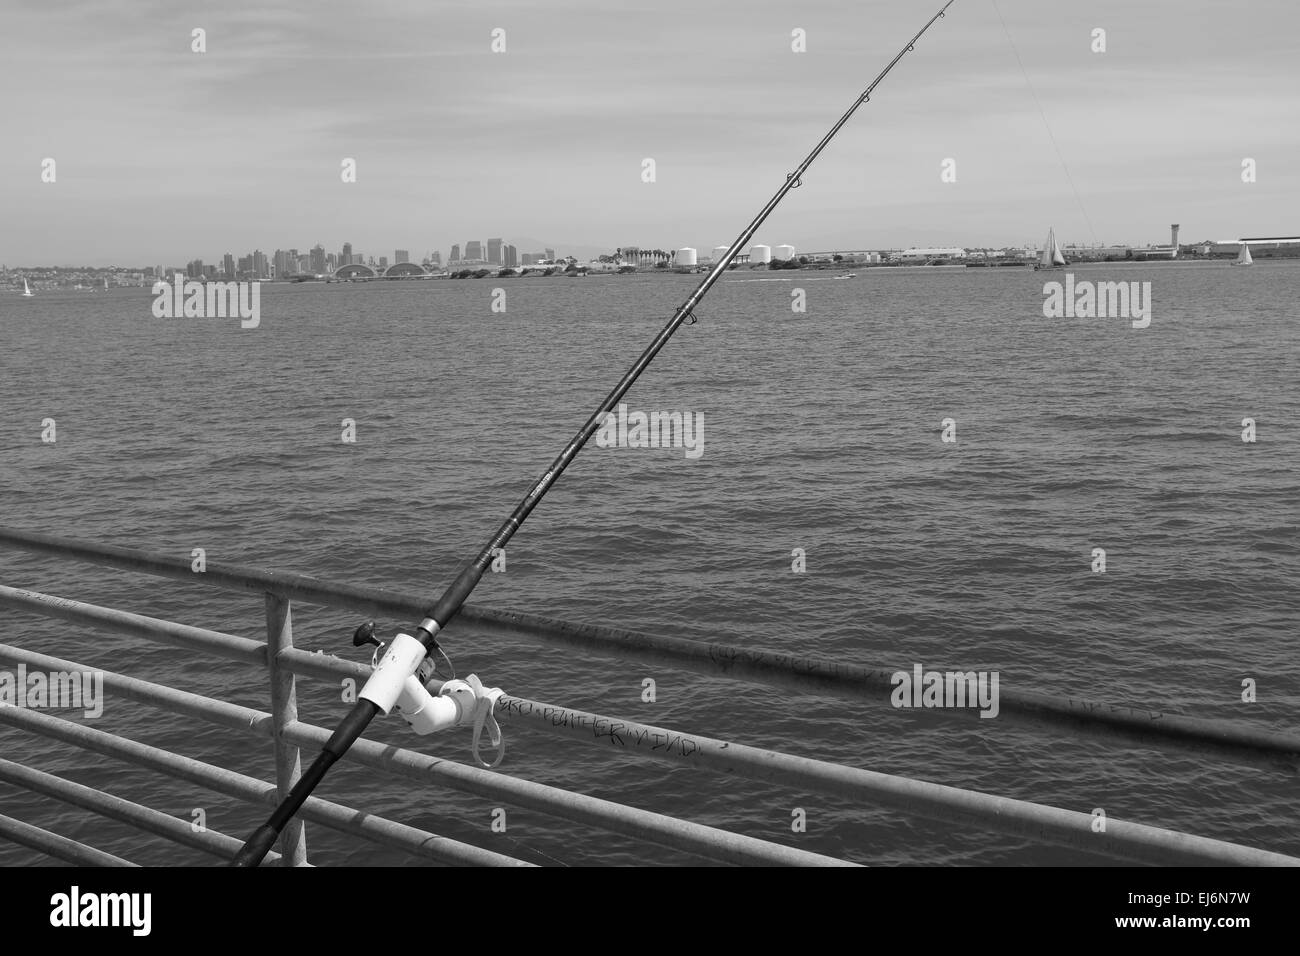 https://c8.alamy.com/comp/EJ6N7W/fishermen-and-pelicans-on-shelter-island-pier-san-diego-bay-fishing-EJ6N7W.jpg